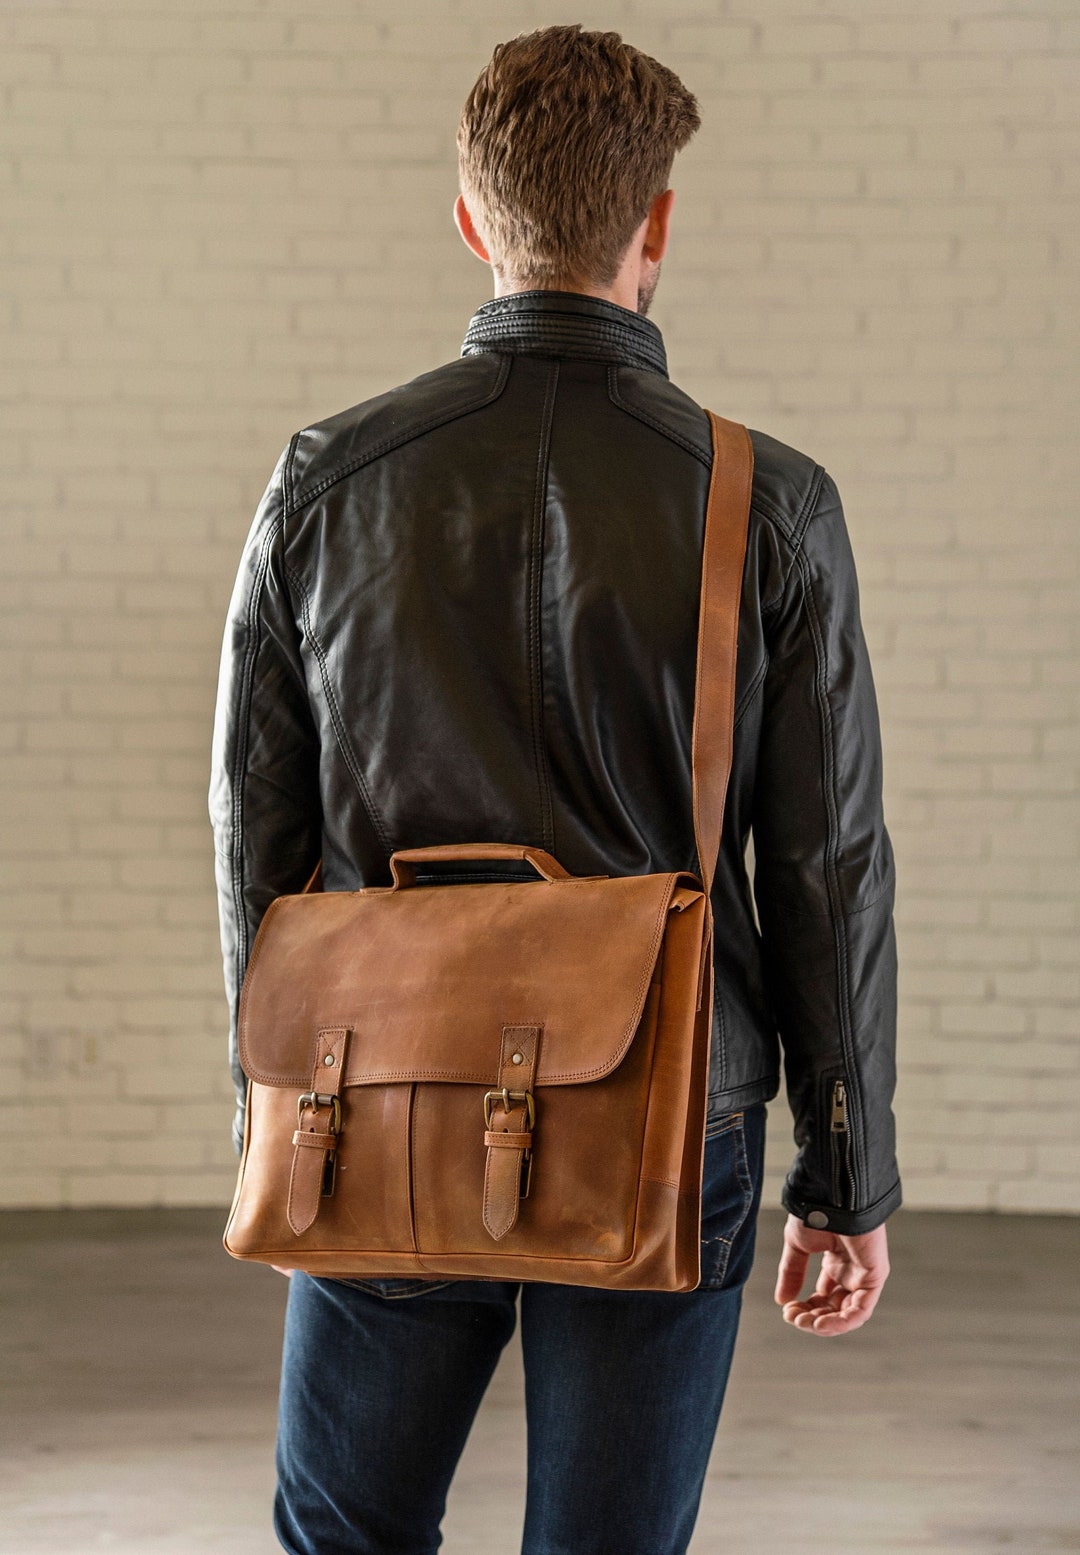 Genuine Leather Men's Shoulder Bag Vintage Small Flap Messenger